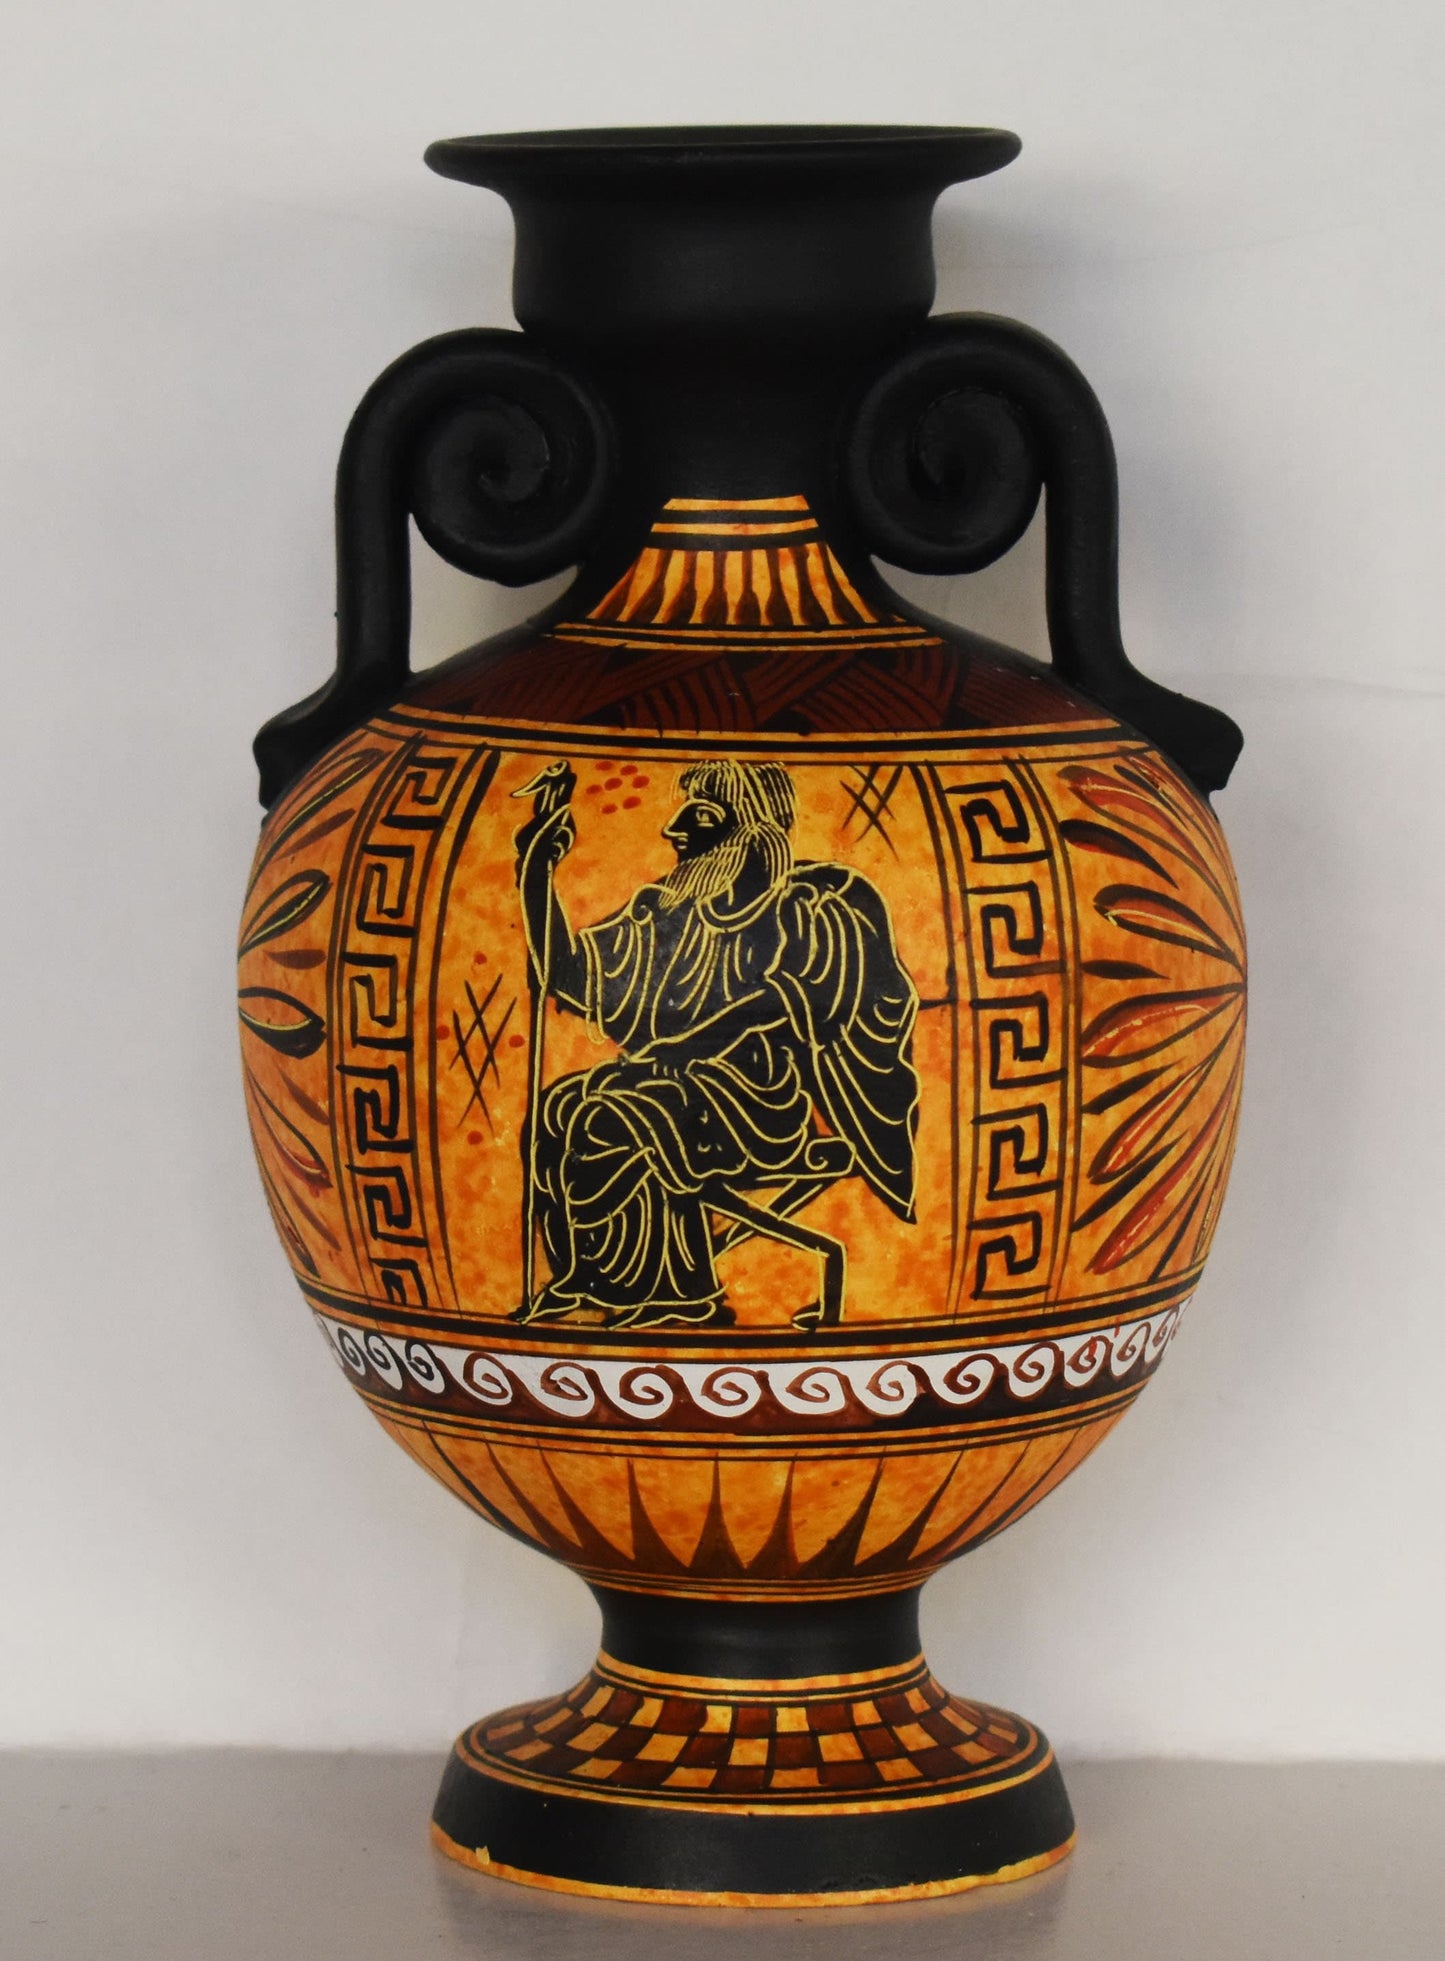 Zeus Jupiter - Greek Roman God of the Sky and Thunder, King of the Gods - Meander and Floral Motives - Ceramic Vase